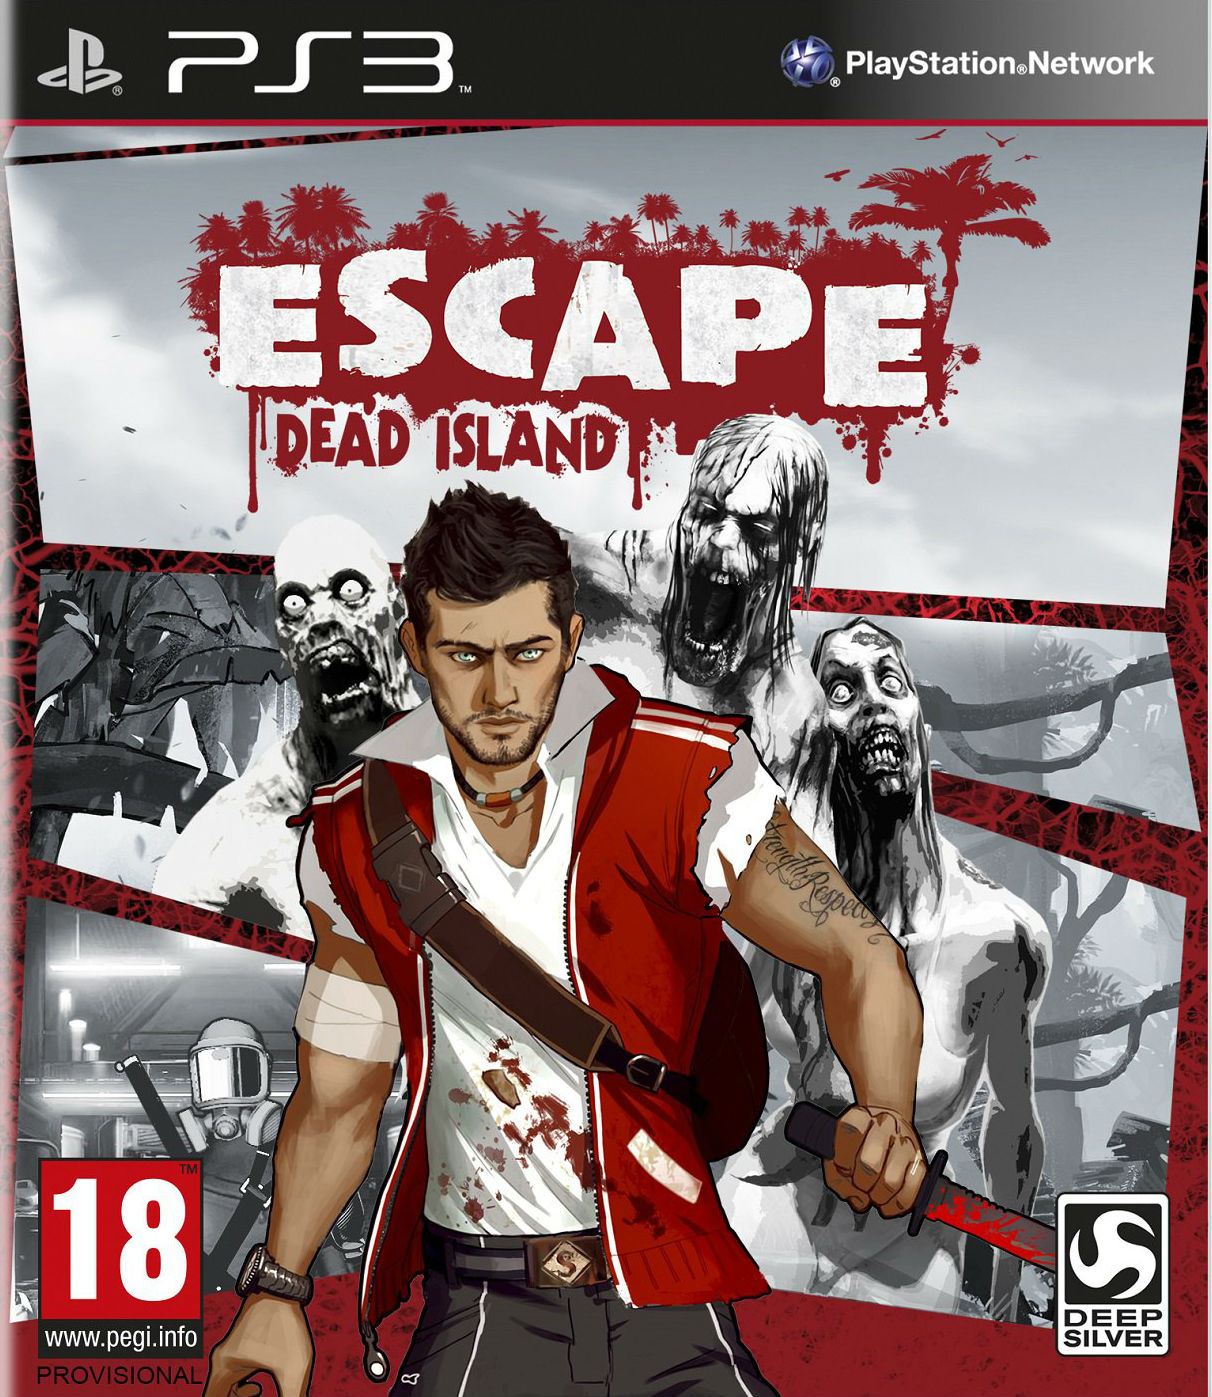 Dead Island Escape